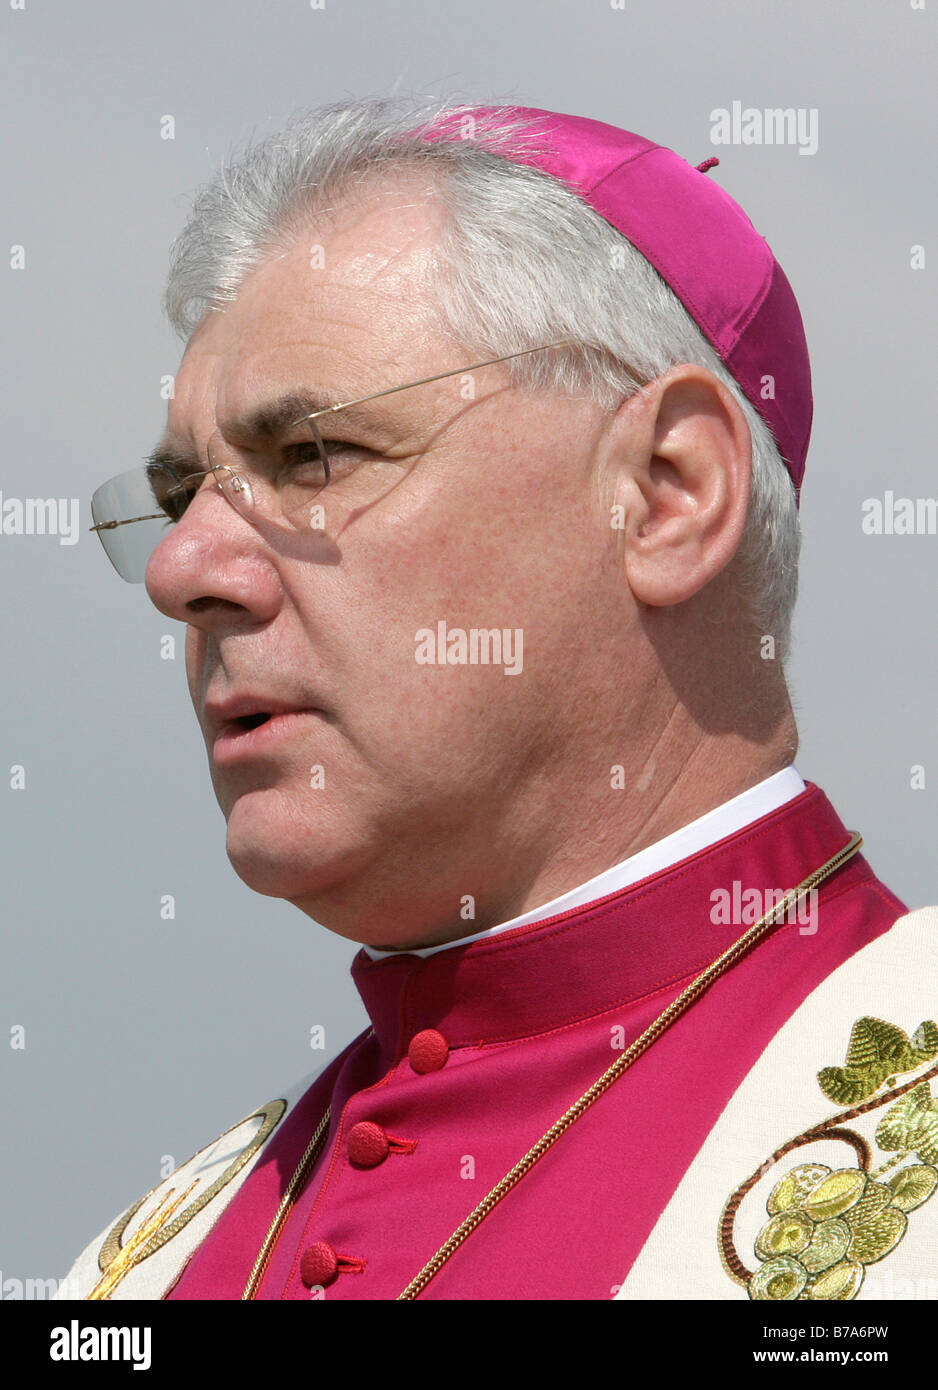 Bishop Gerhard Ludwig Mueller, bishop of Regensburg and the diocese Regensburg, Regensburg, Bavaria, Germany, Europe Stock Photo